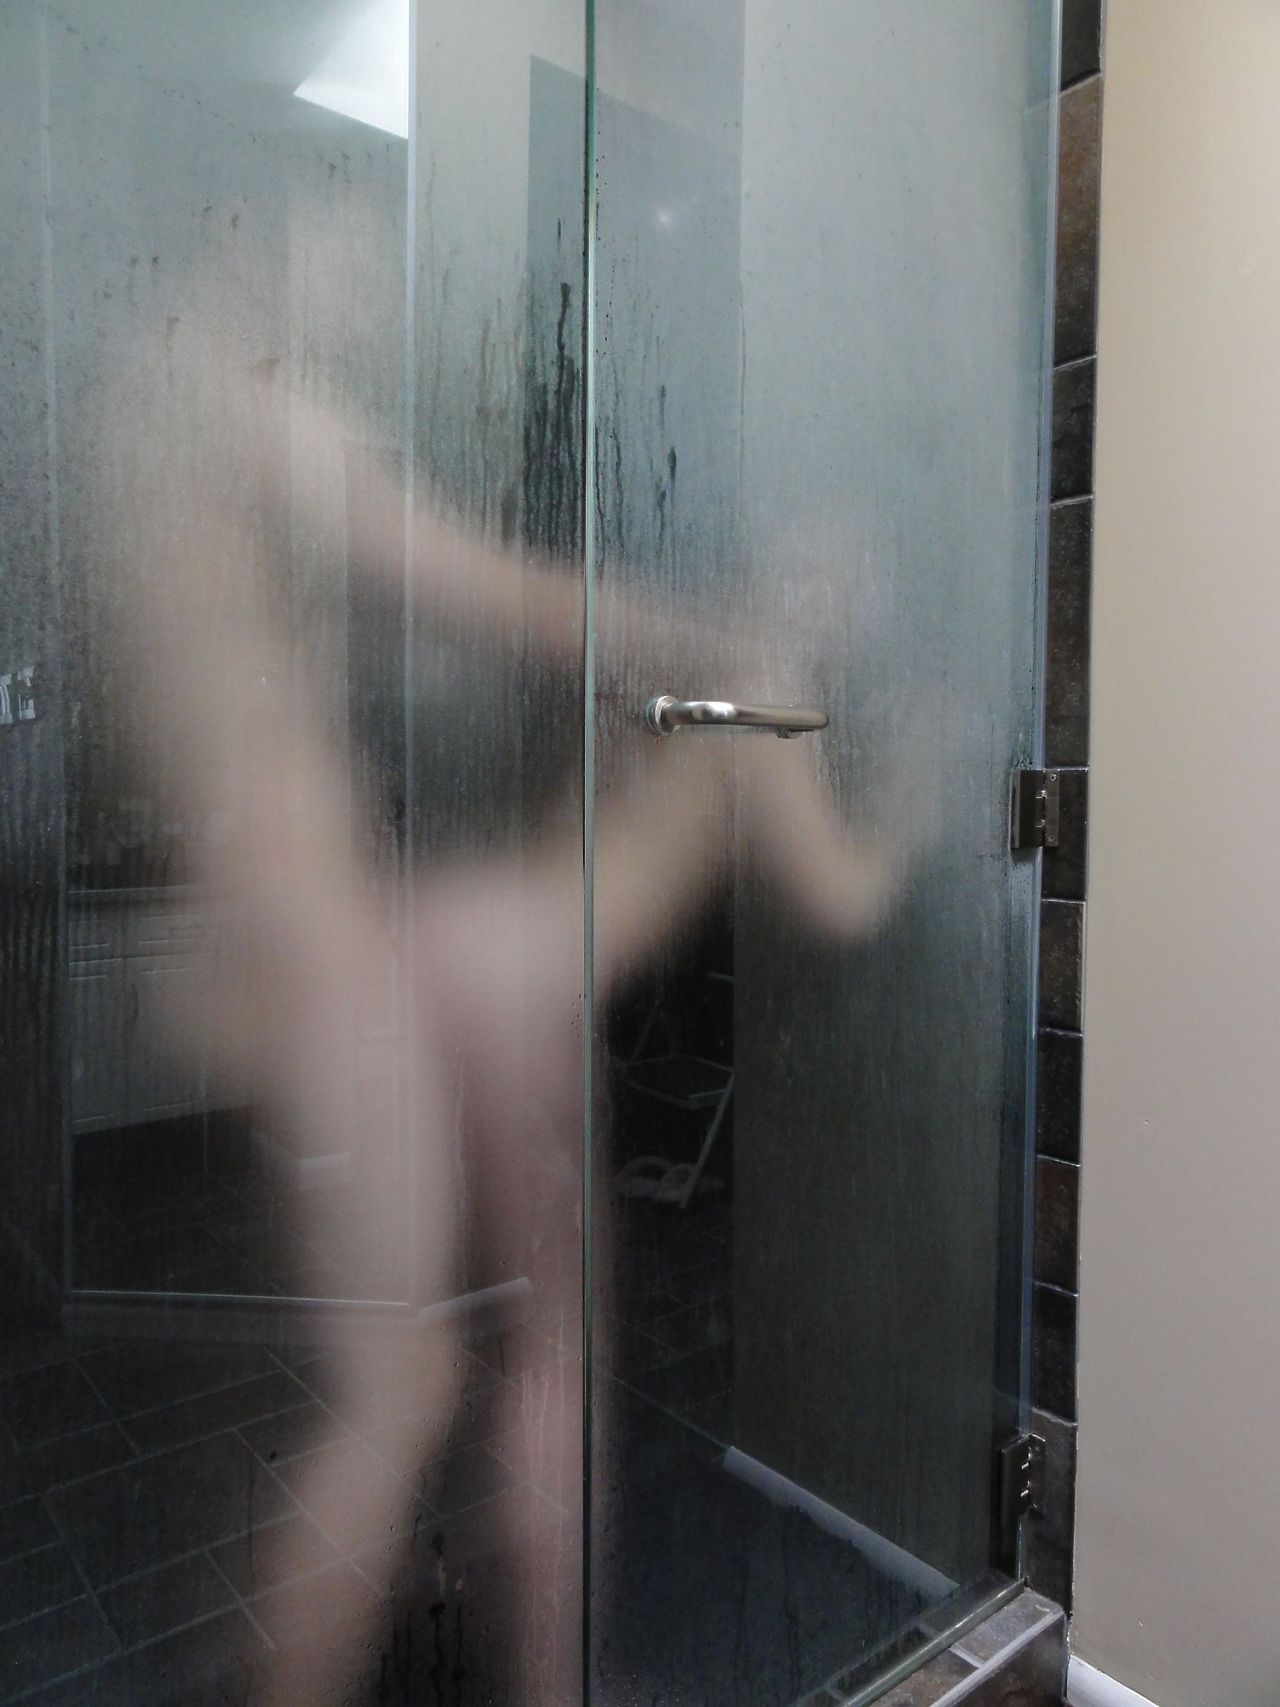 Mija in the shower